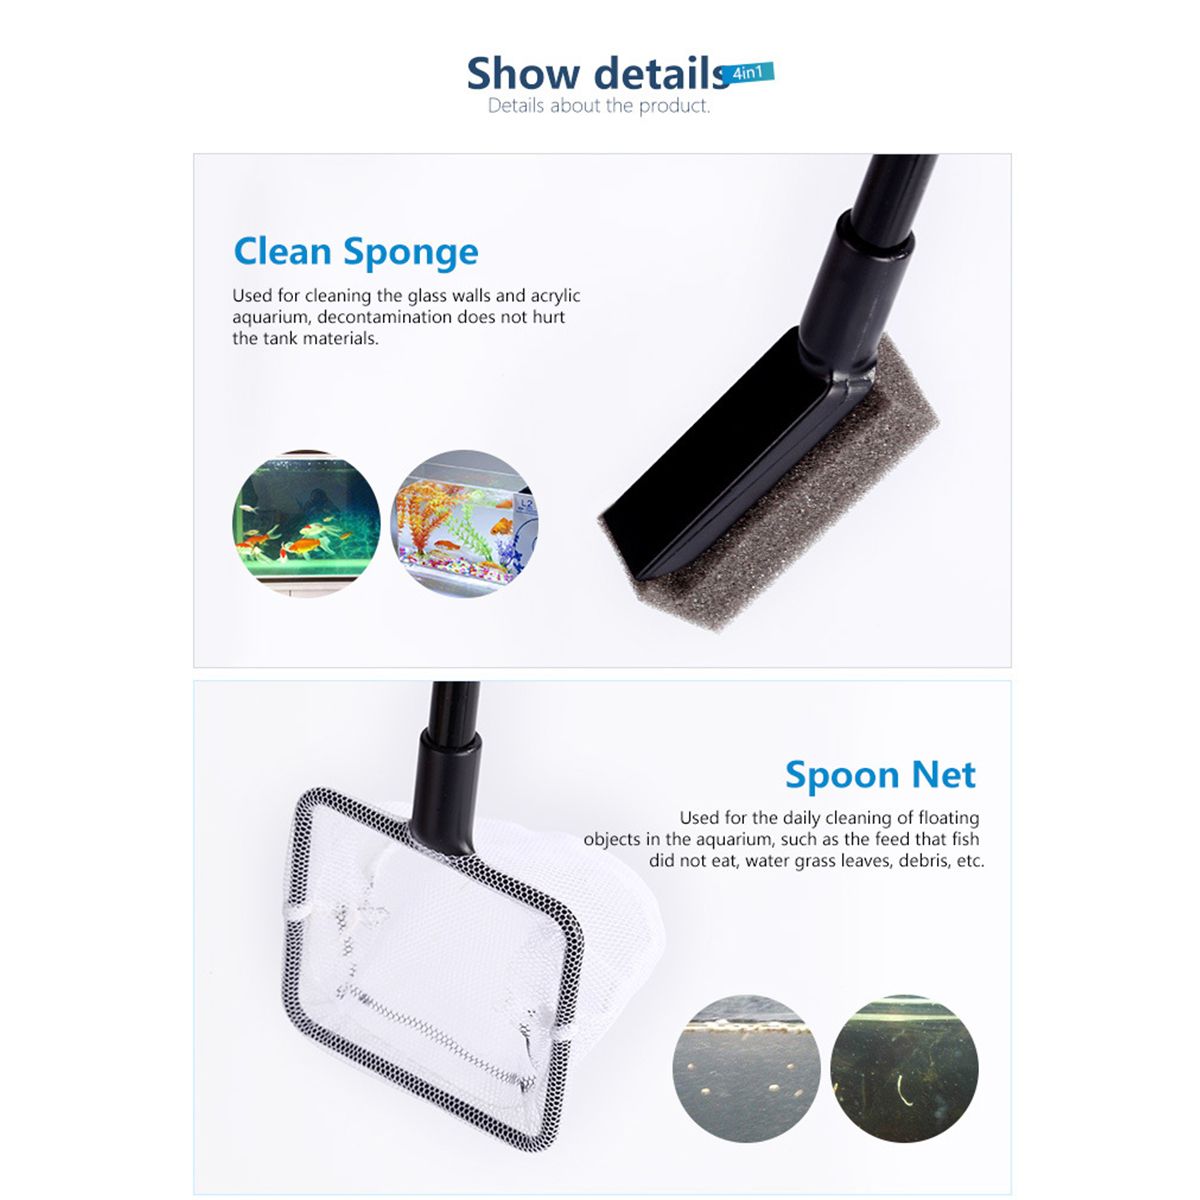 4-in1-Aquarium-Cleaning-Kit-Tool-Fish-Tank-Algae-Vacuum-Gravel-Cleaner-Brush-Set-1679709